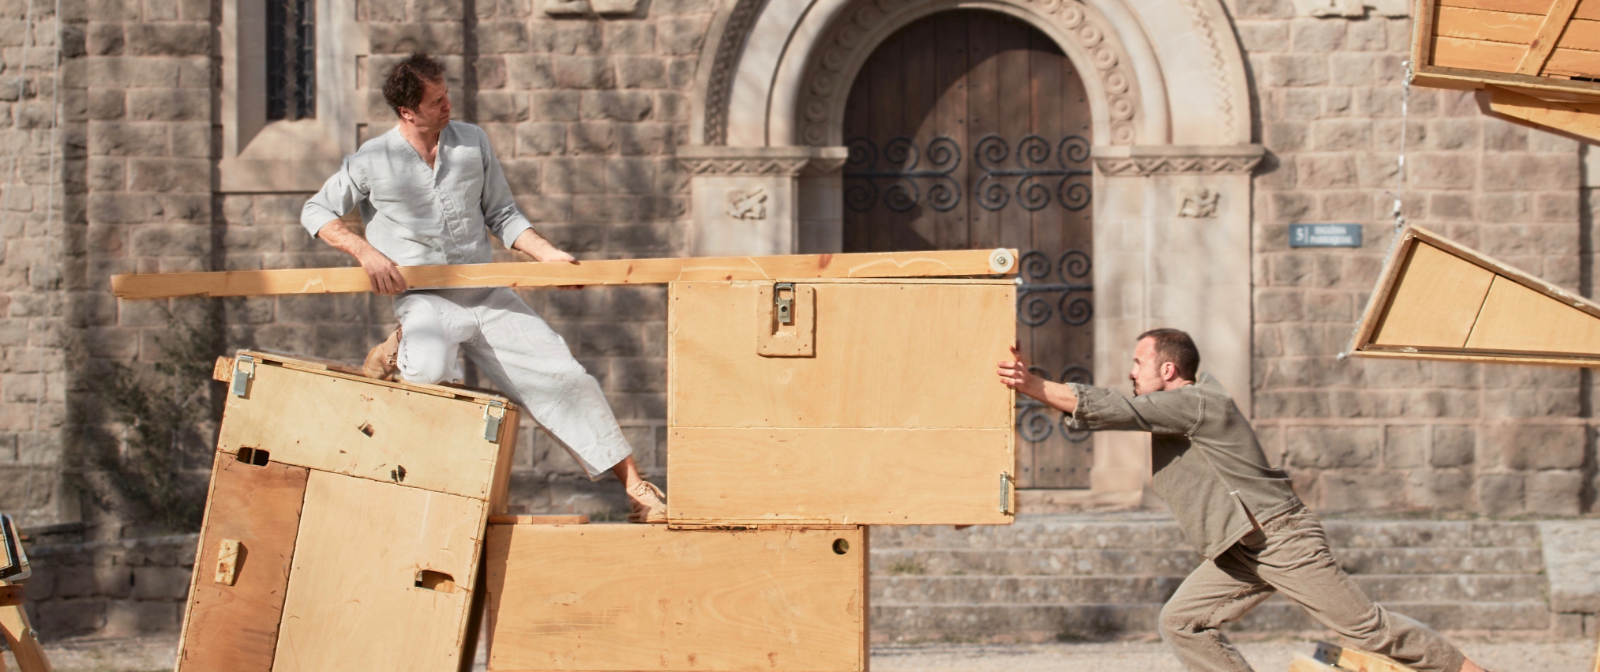 Zwei Männer auf einer Holzkontrustion schieben einen Holzkasten gegeneinader. Im Hintergrund ist alte Fassadenmauer zu sehen.